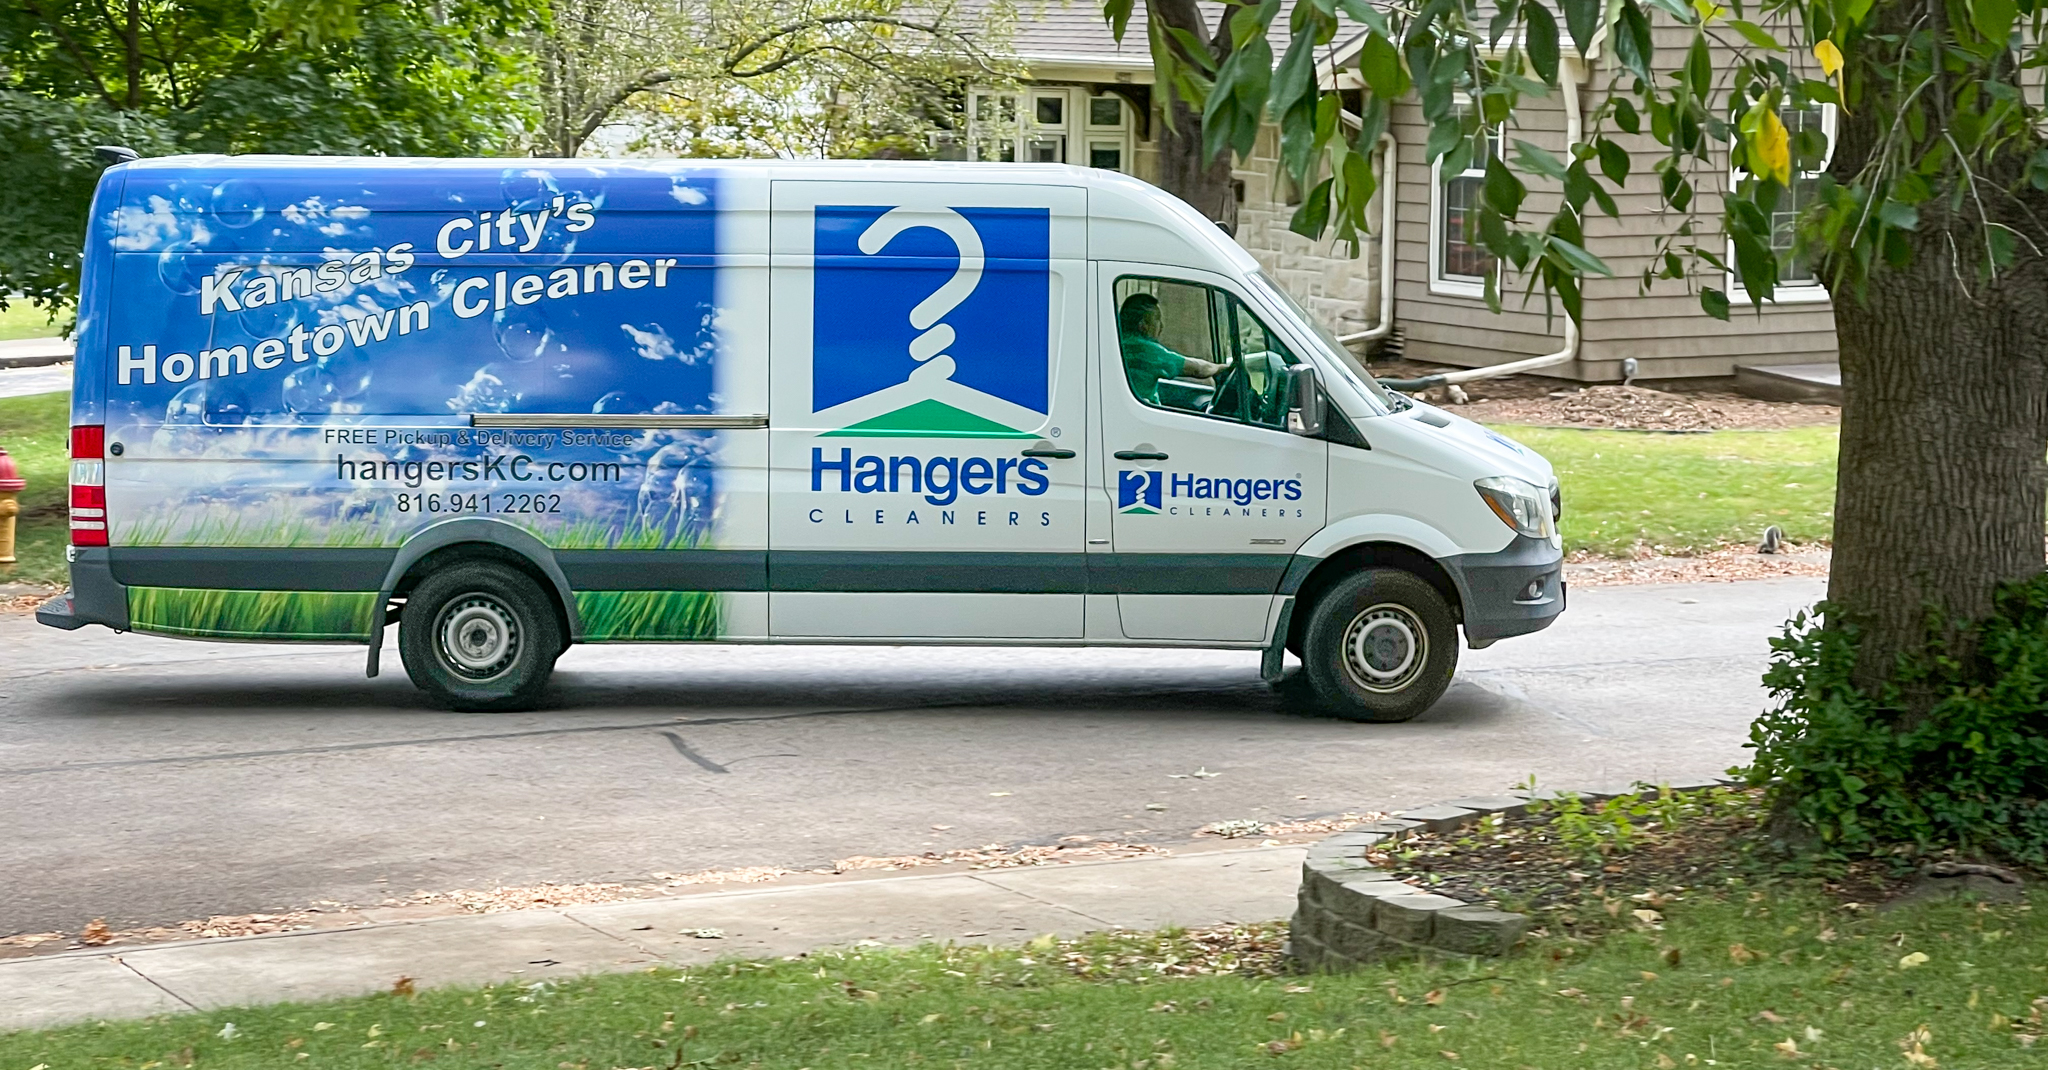 Hangers Cleaners delivery van seen in a Kansas City neighborhood.